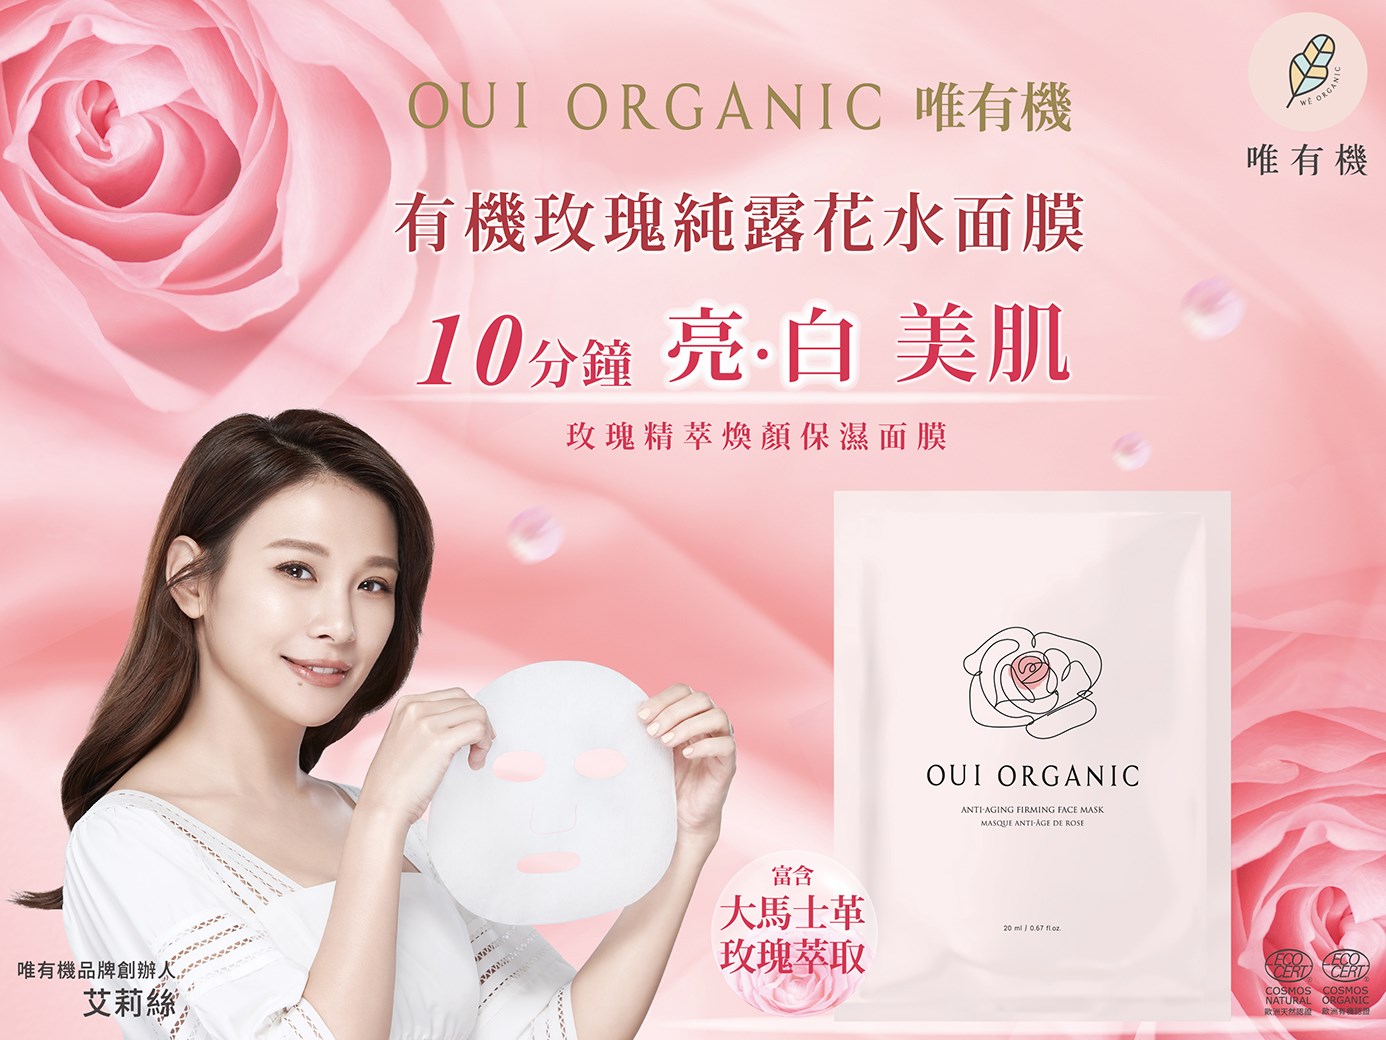 Oui Organic唯有機 有機玫瑰純露花水面膜，10分鐘亮白美肌